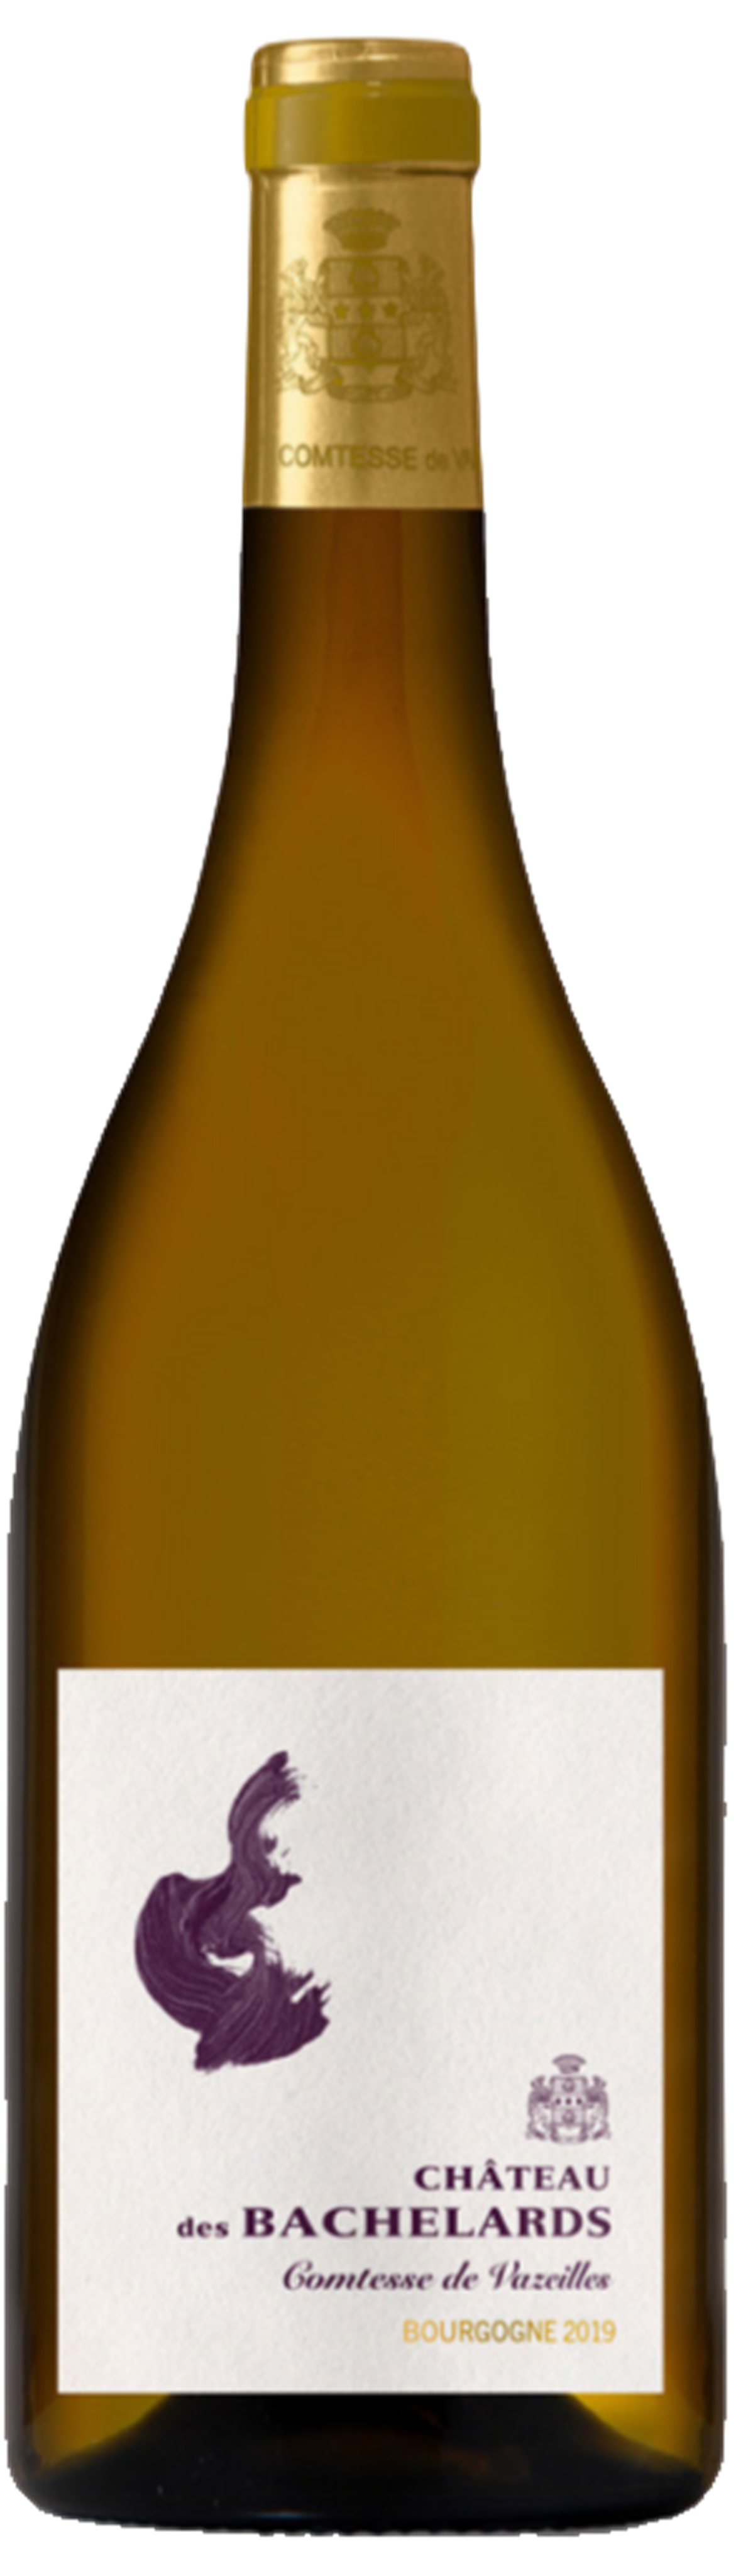 Beaujolais Blanc 2019 - Château des Bachelards